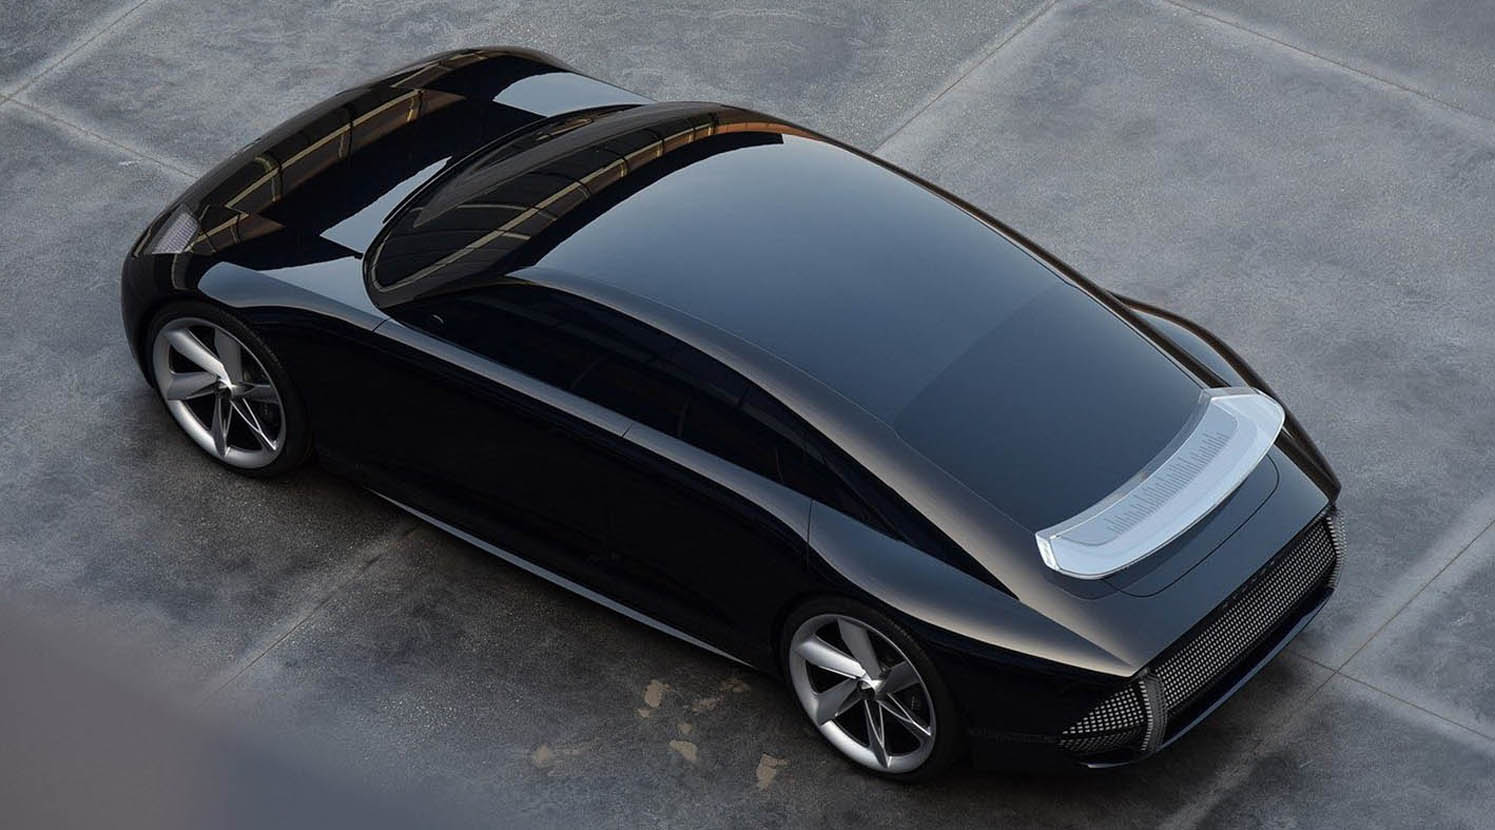 هيونداي بروفيسي 2021 الكهربائية الجديدة تماماً – أجمل تصاميم السيارات العابرة للزمن